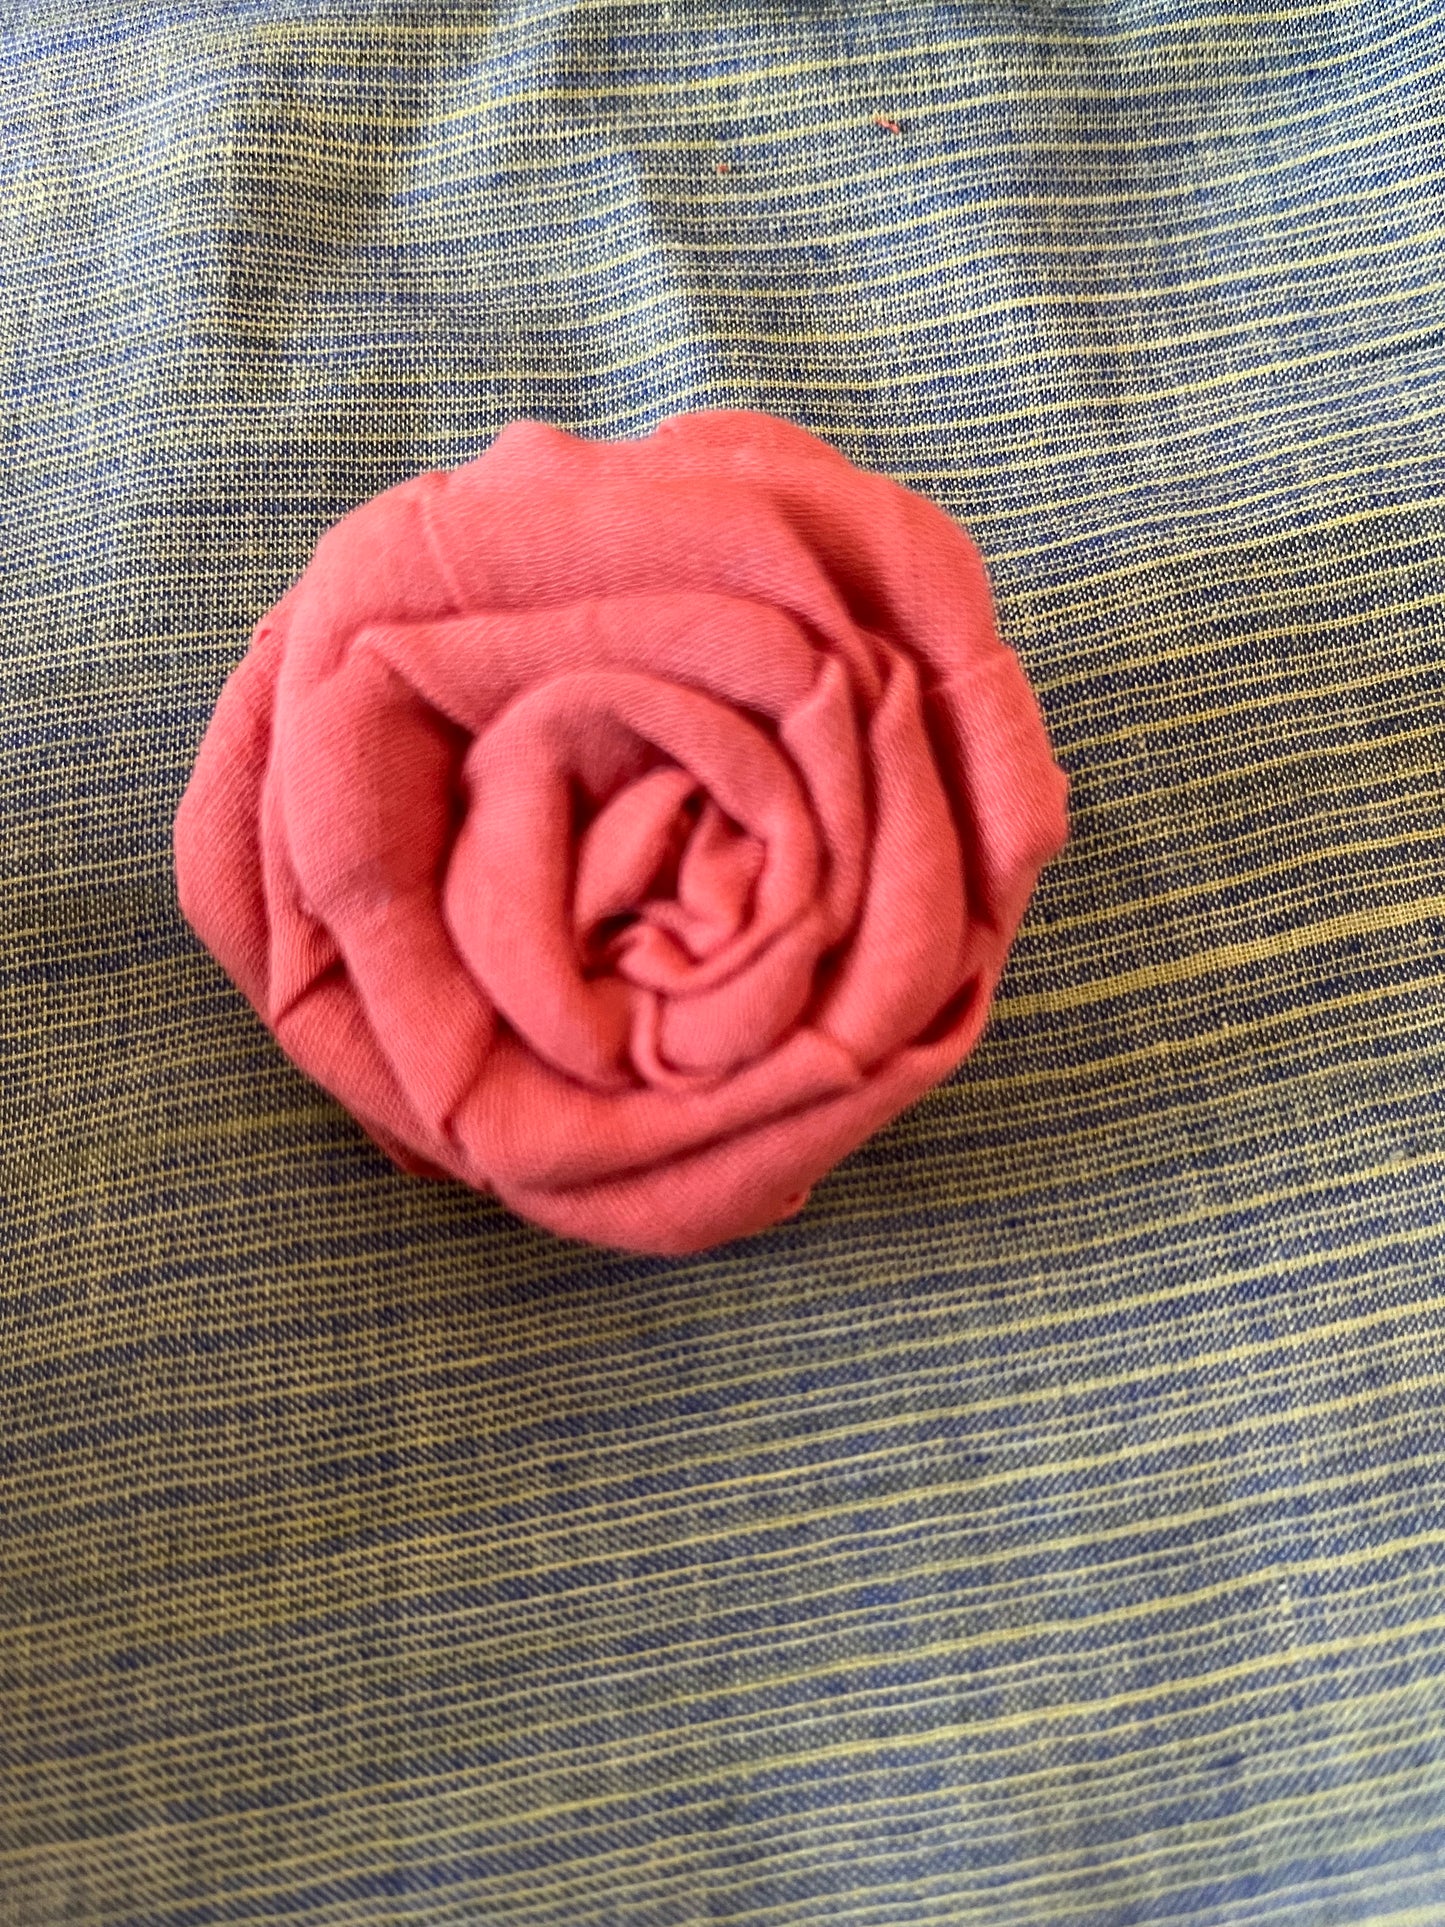 Handmade-rose-brooch-small-pink